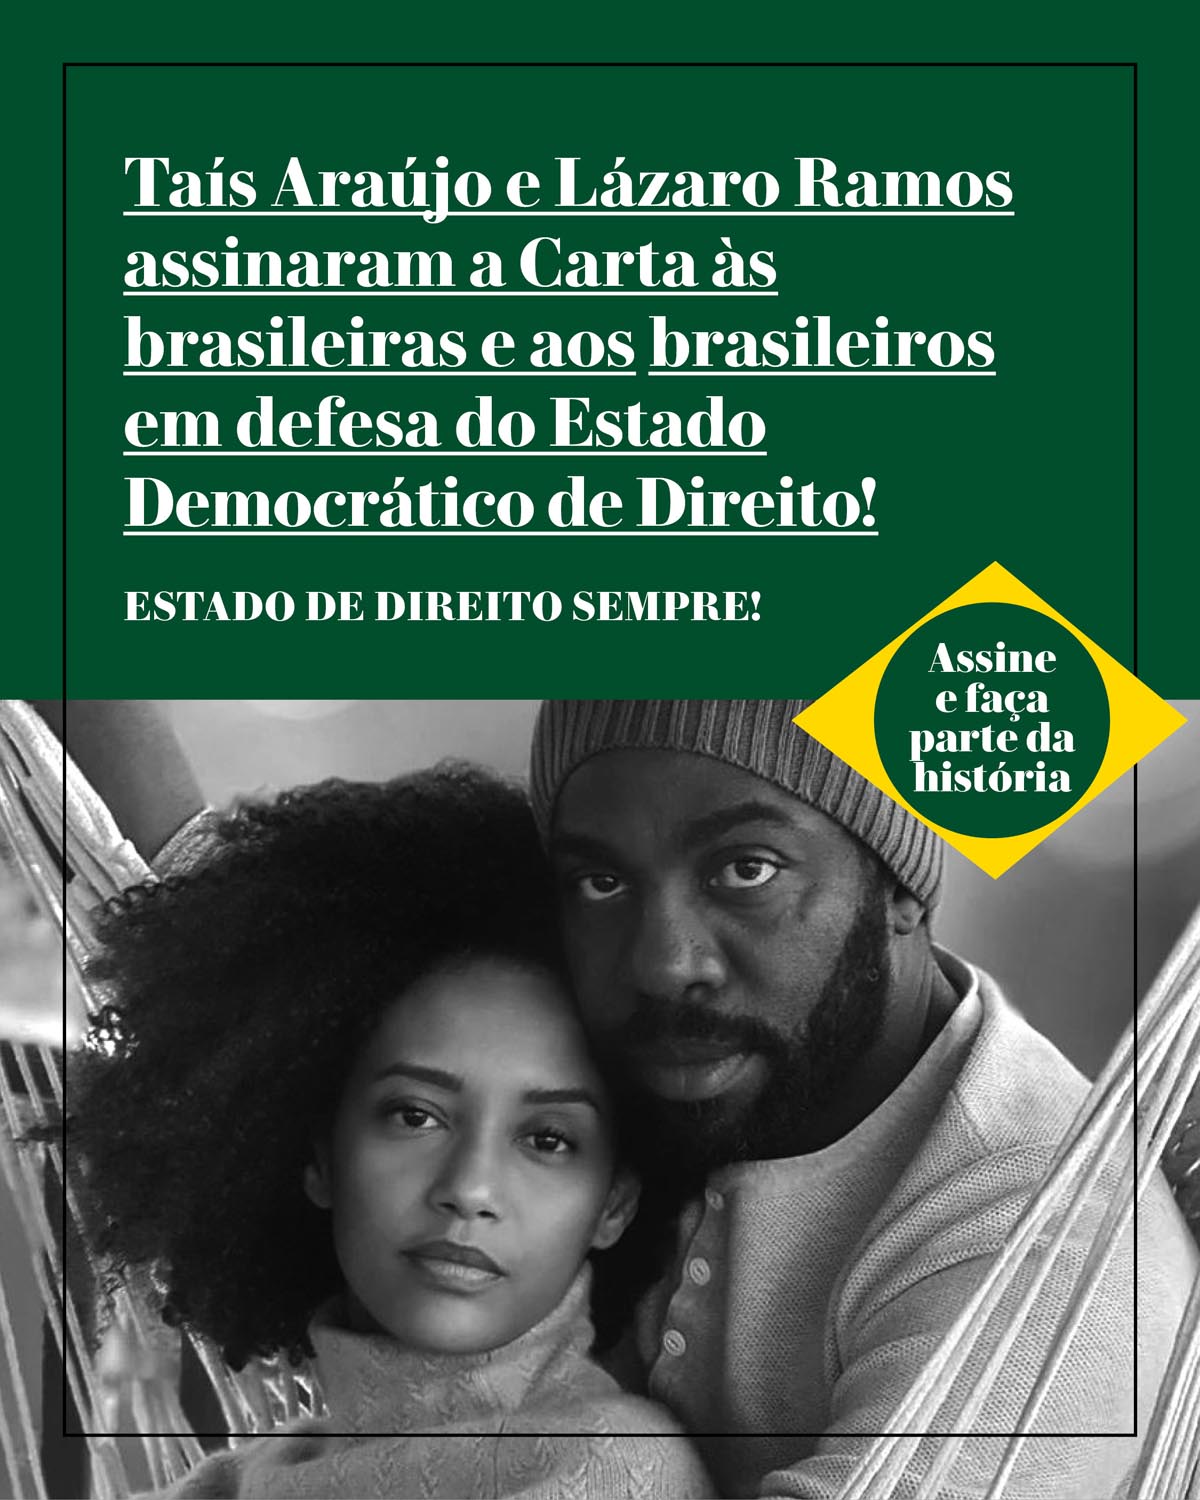 Taís Araújo e Lázaro Ramos assinaram a Carta às brasileiras e aos brasileiros em defesa do Estado Democrático de Direito!